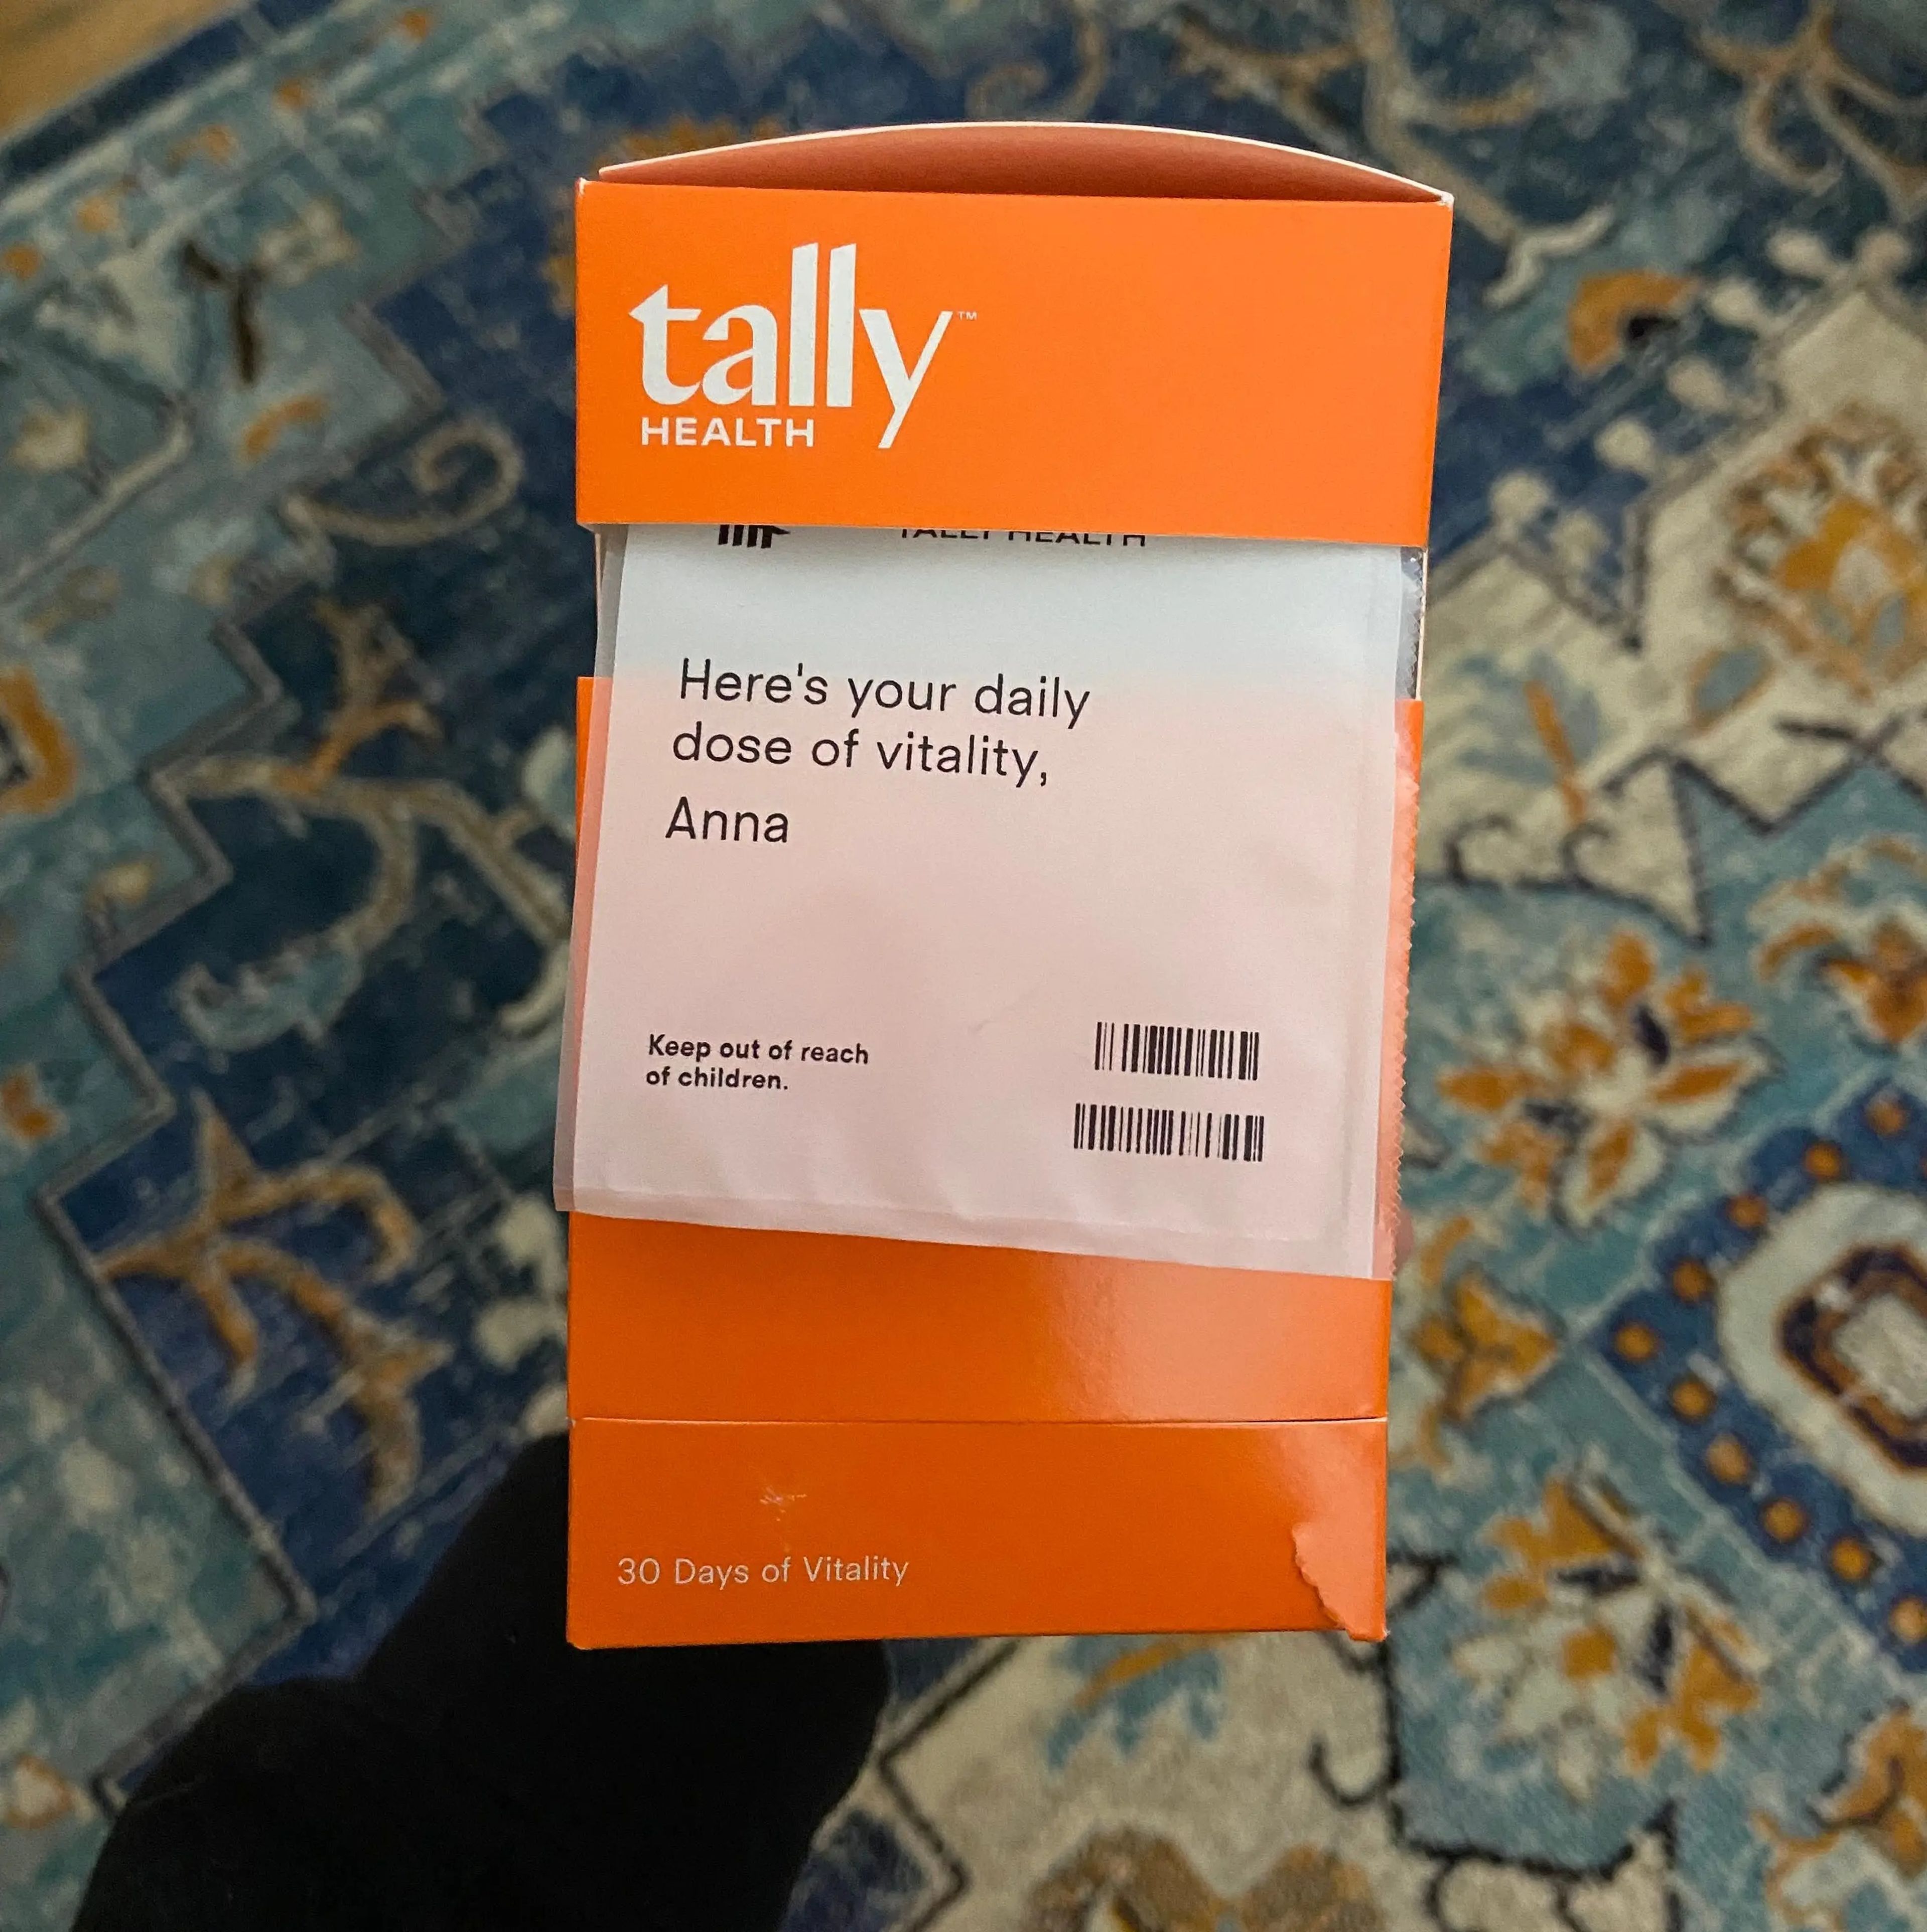 Los miembros de Tally Health reciben suplementos "Vitality", que según la empresa están "diseñados para potenciar los mecanismos de defensa celular y atenuar los efectos del envejecimiento." Kaeberlein los califica de conflicto de intereses.